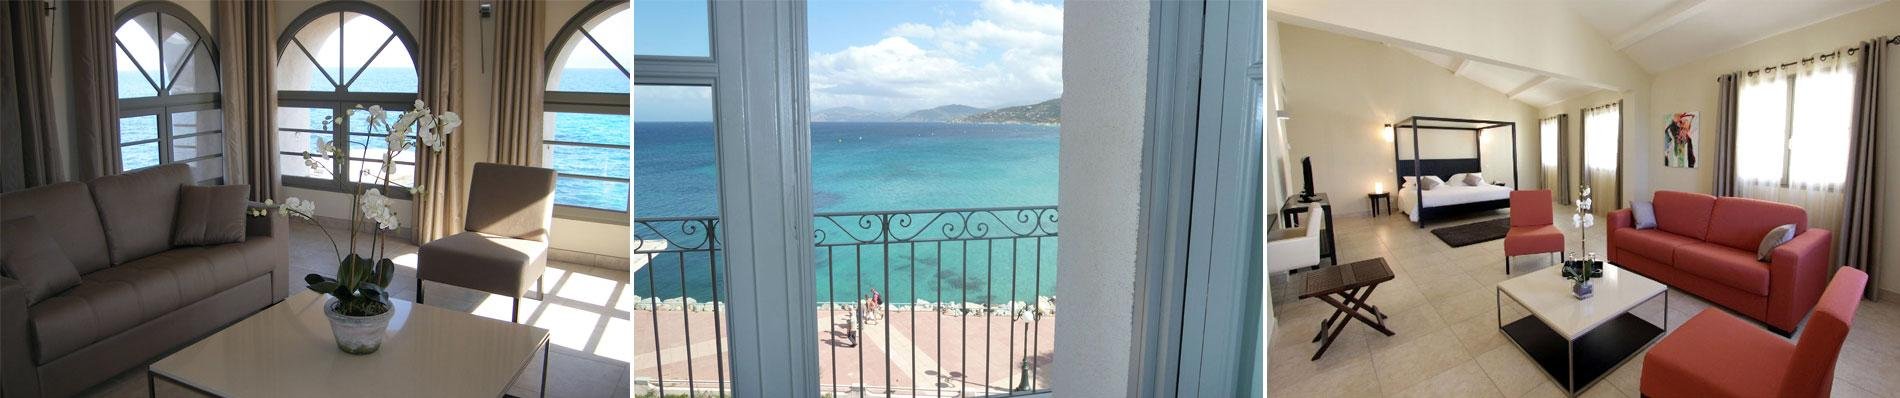 Hotel Perla Rossa Calvi Ile Rousse Balagne Corsica